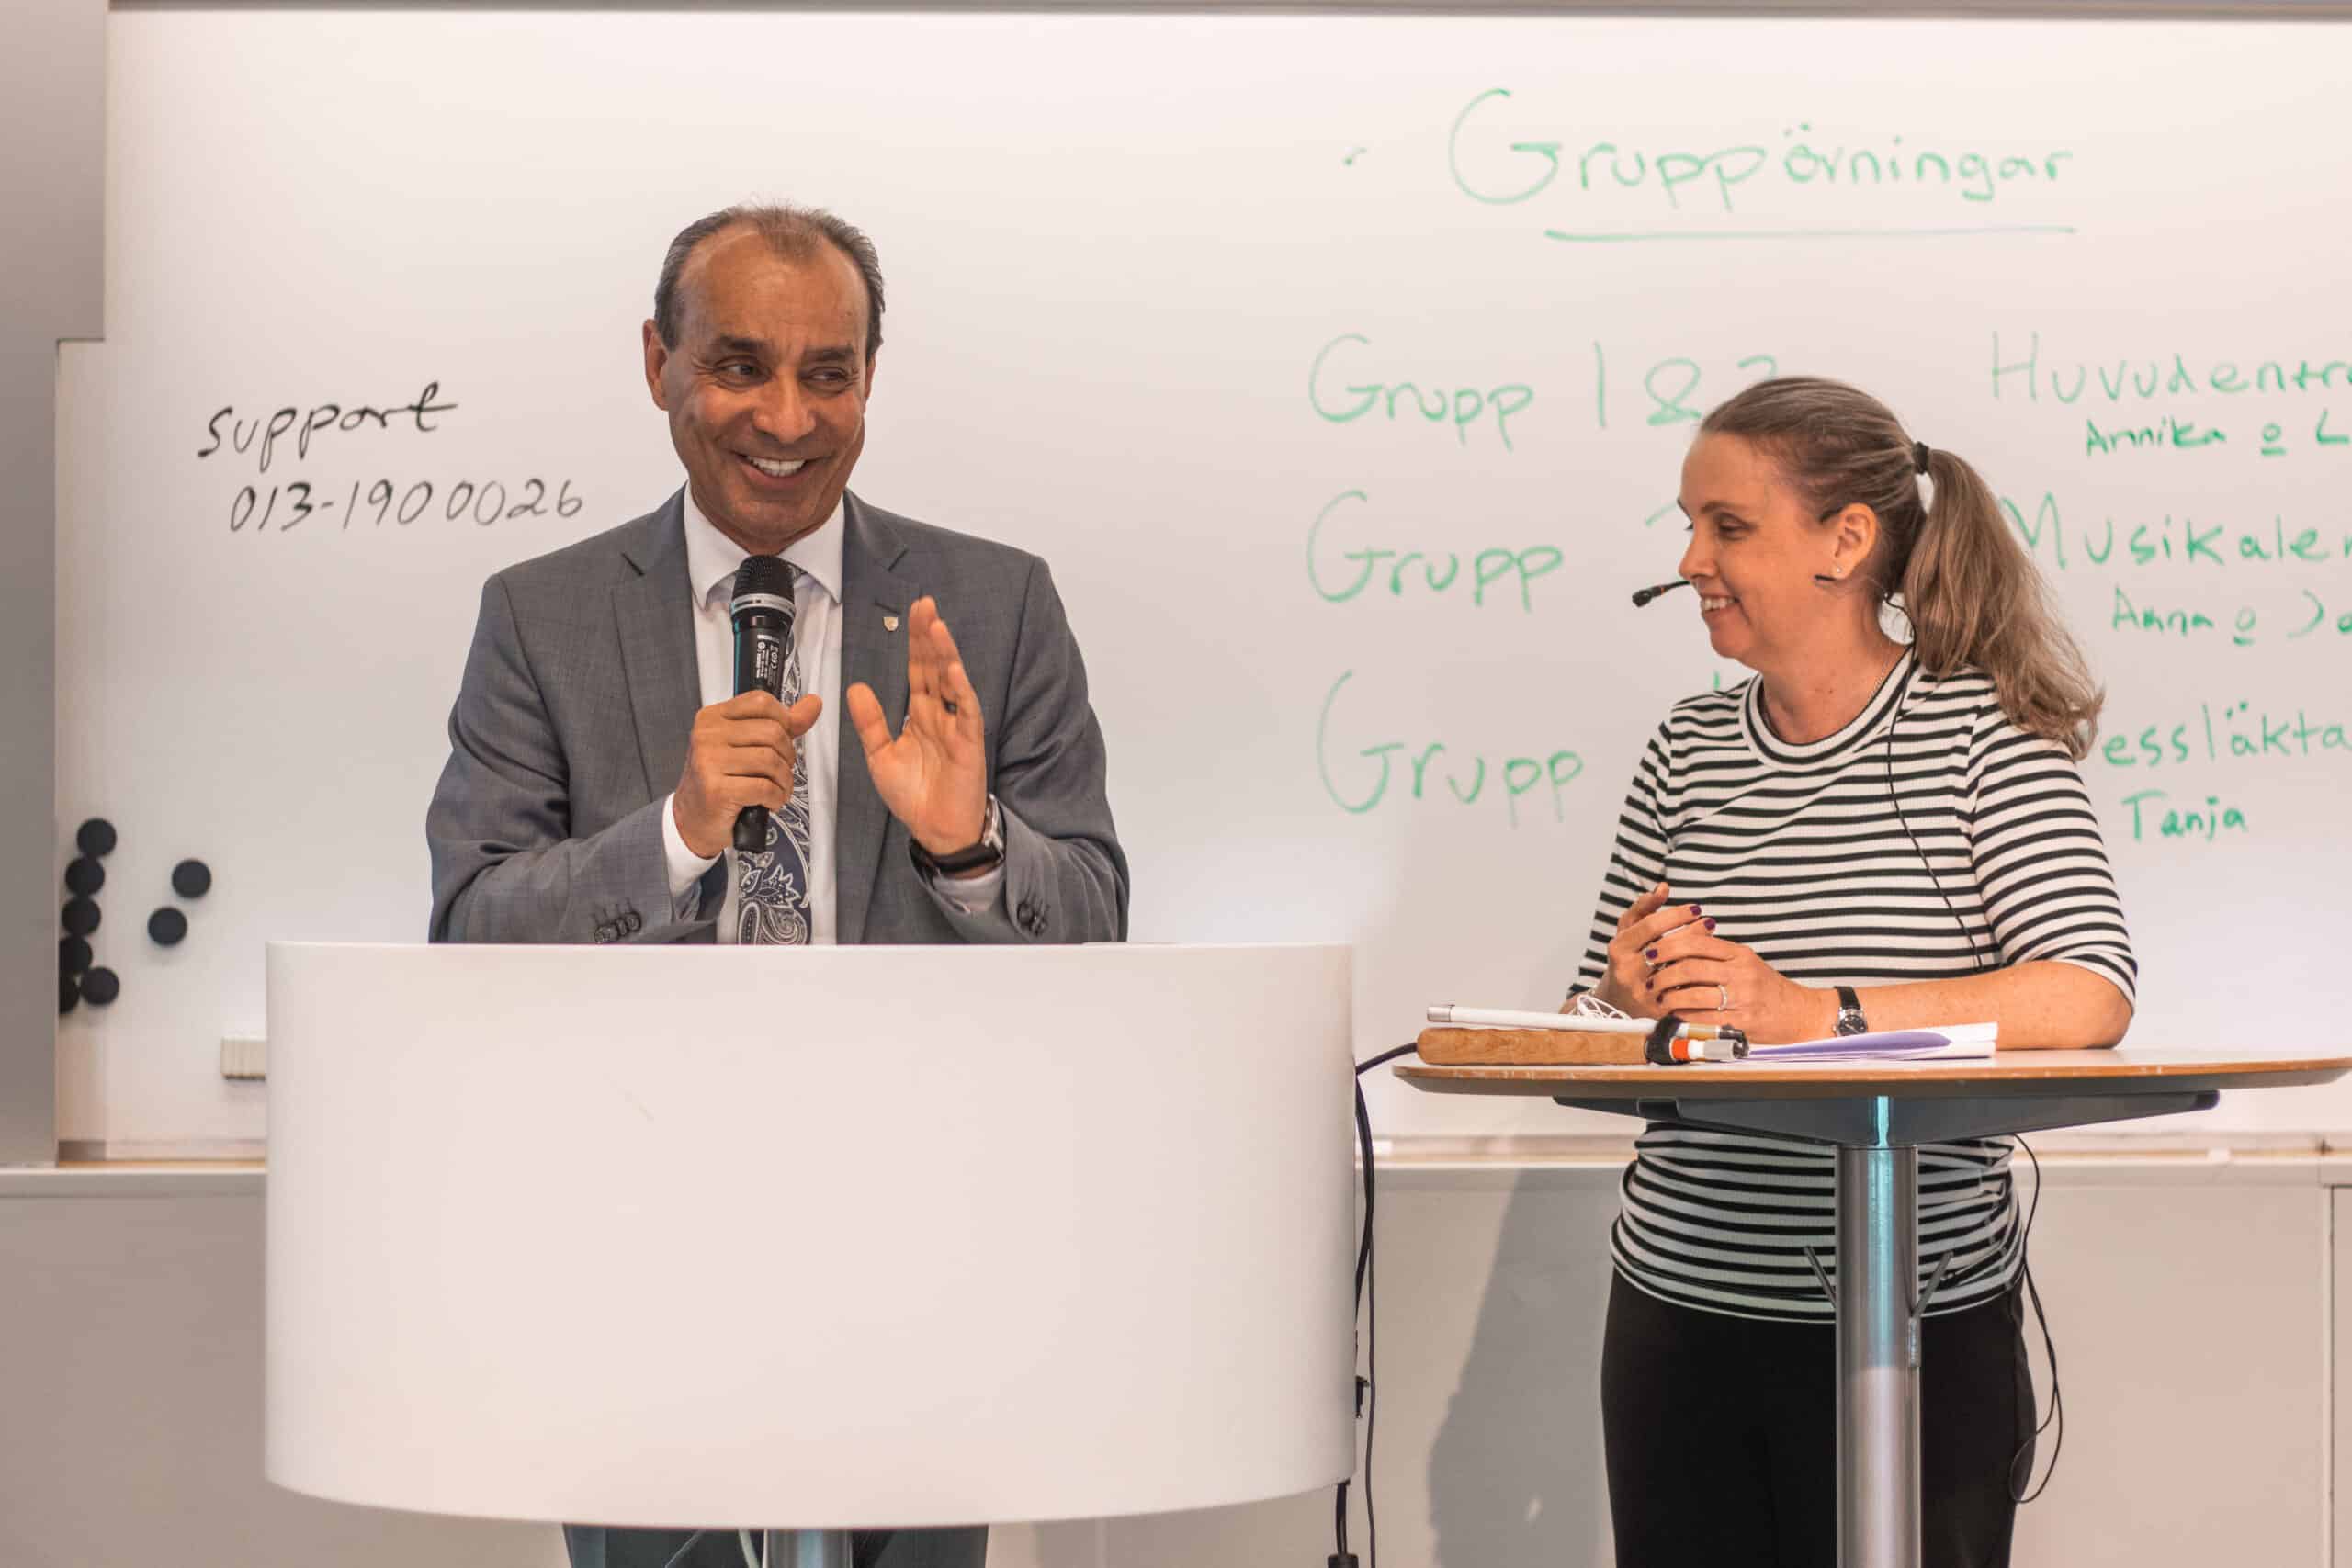 Man och kvinna pratar i föreläsningsrum framför en whiteboard. Mannen har grå kostym, kort gråsvart hår och håller i en mikrofon. Kvinnan har svartvitranding tröja och headset.